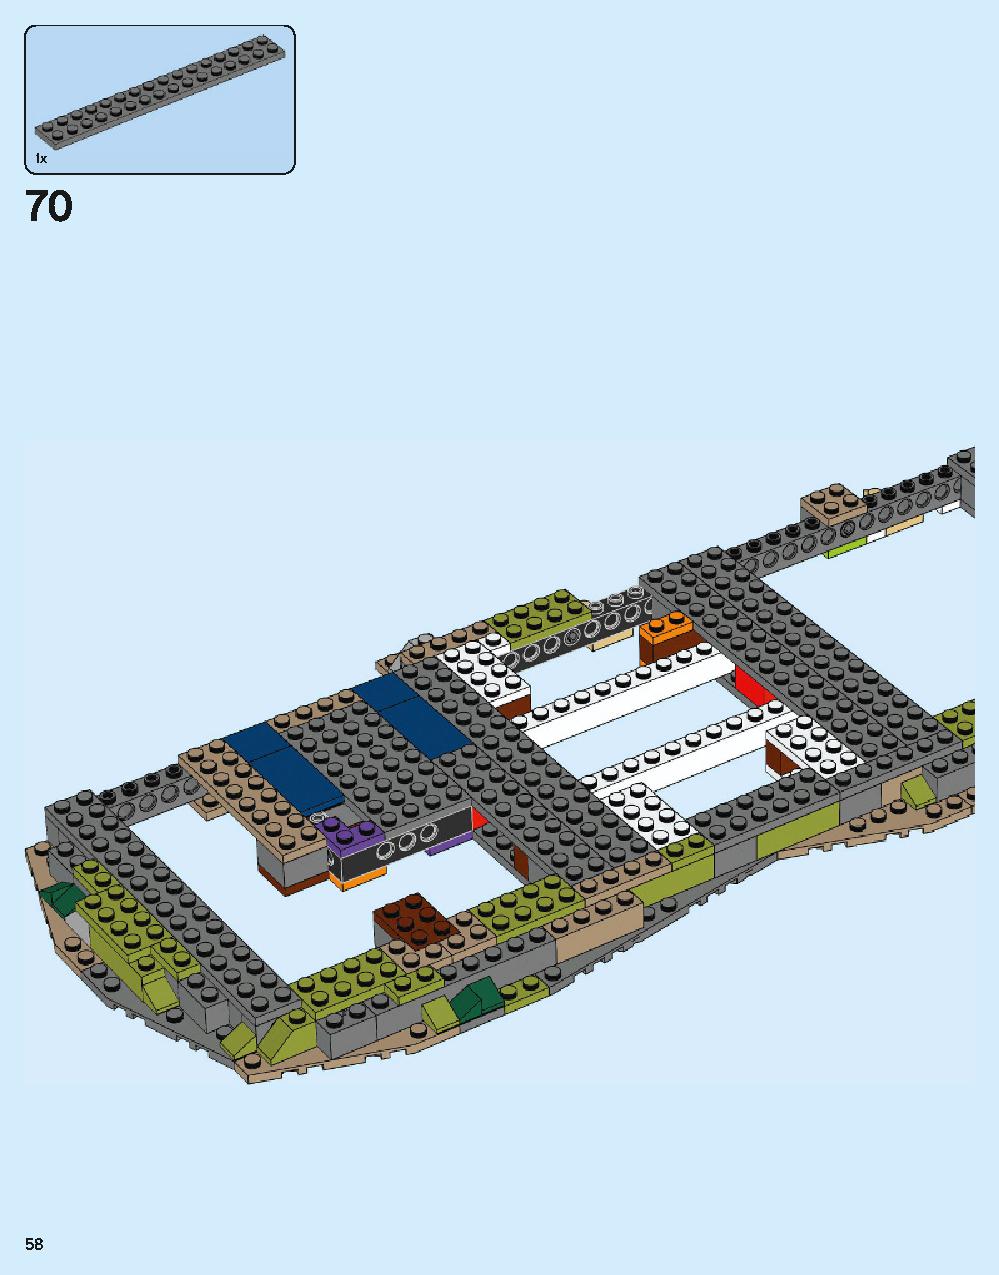 ホグワーツ城 71043 レゴの商品情報 レゴの説明書・組立方法 58 page